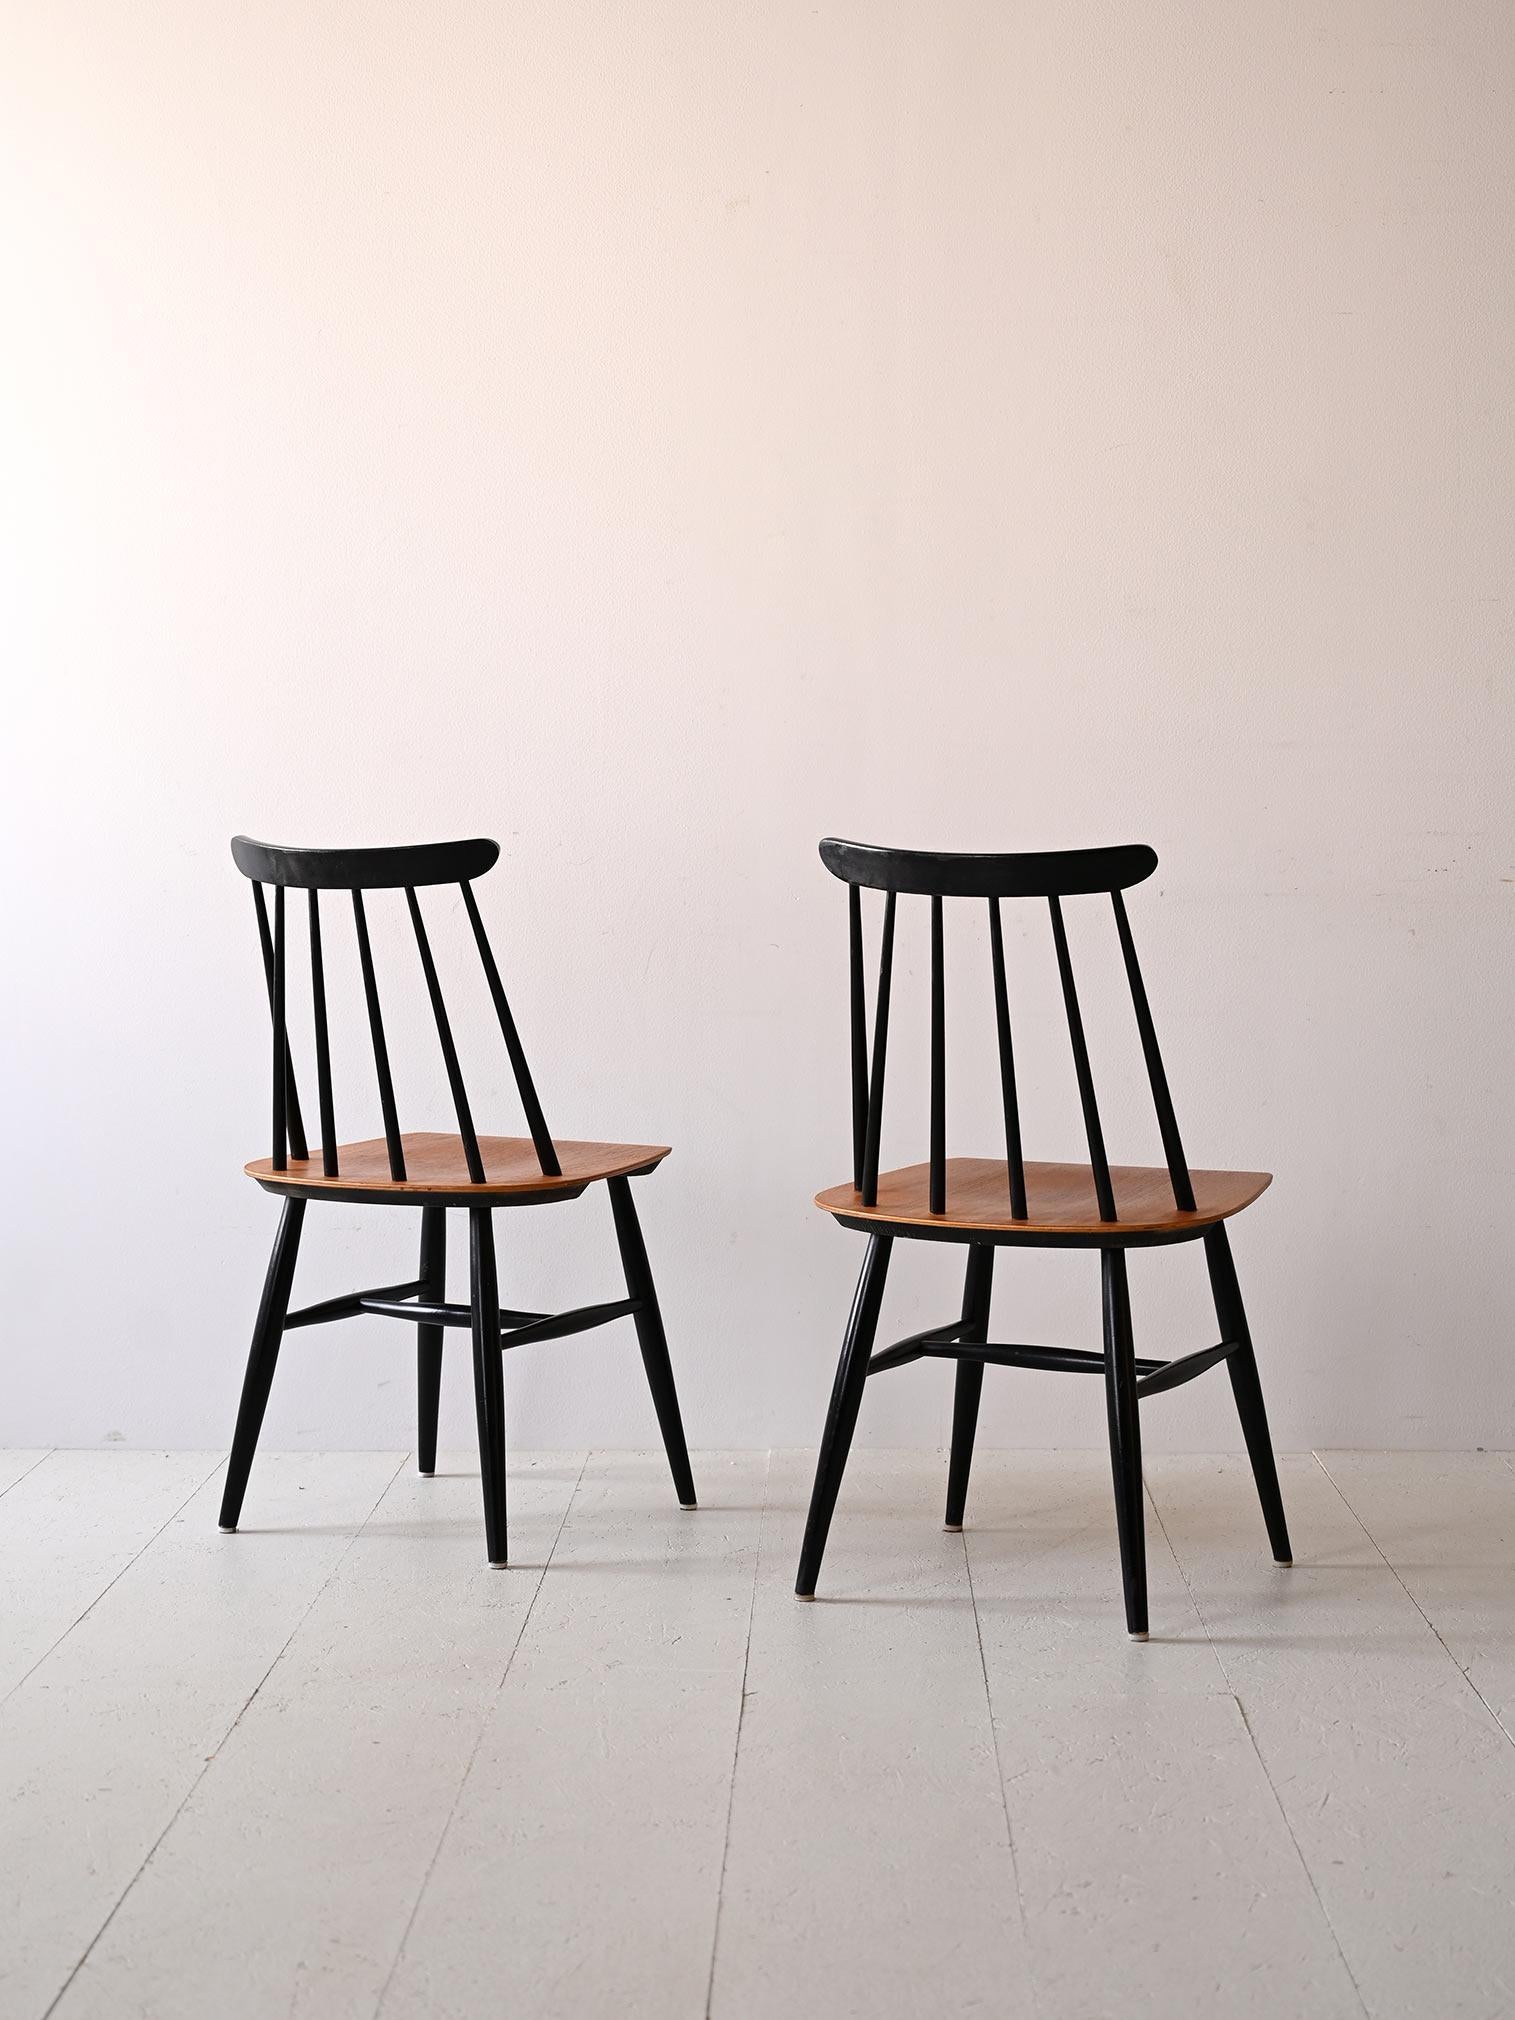 Scandinave moderne Paire de chaises conçues par Ilmari Tapiovaaraa, modèle Fanett